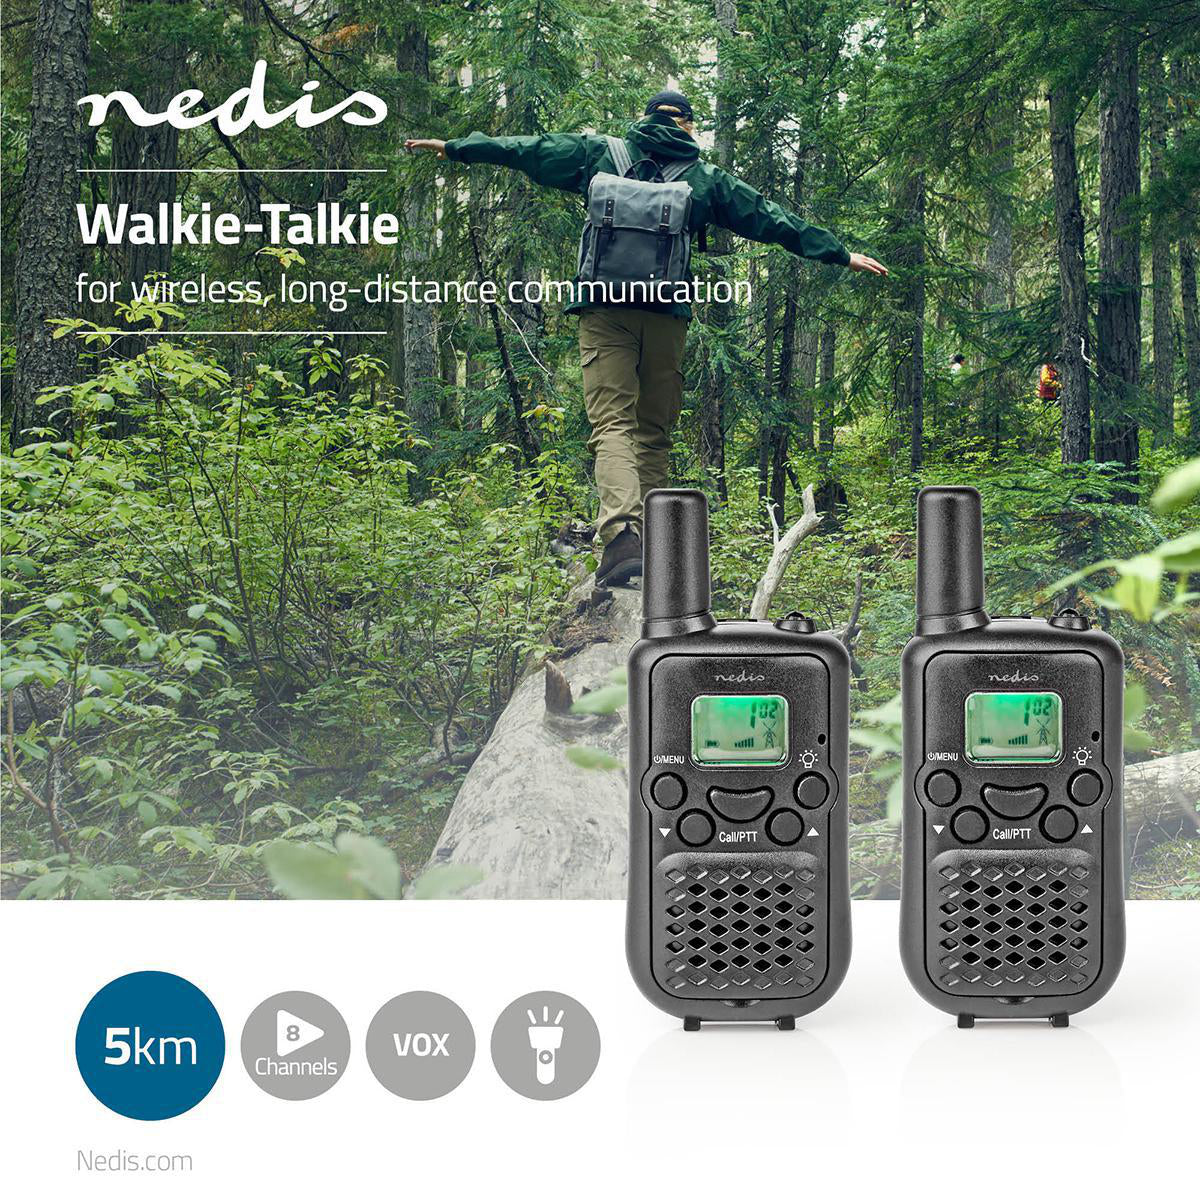 Conjunto de 2 Walkie-talkies NEDIS WLTK0500BK